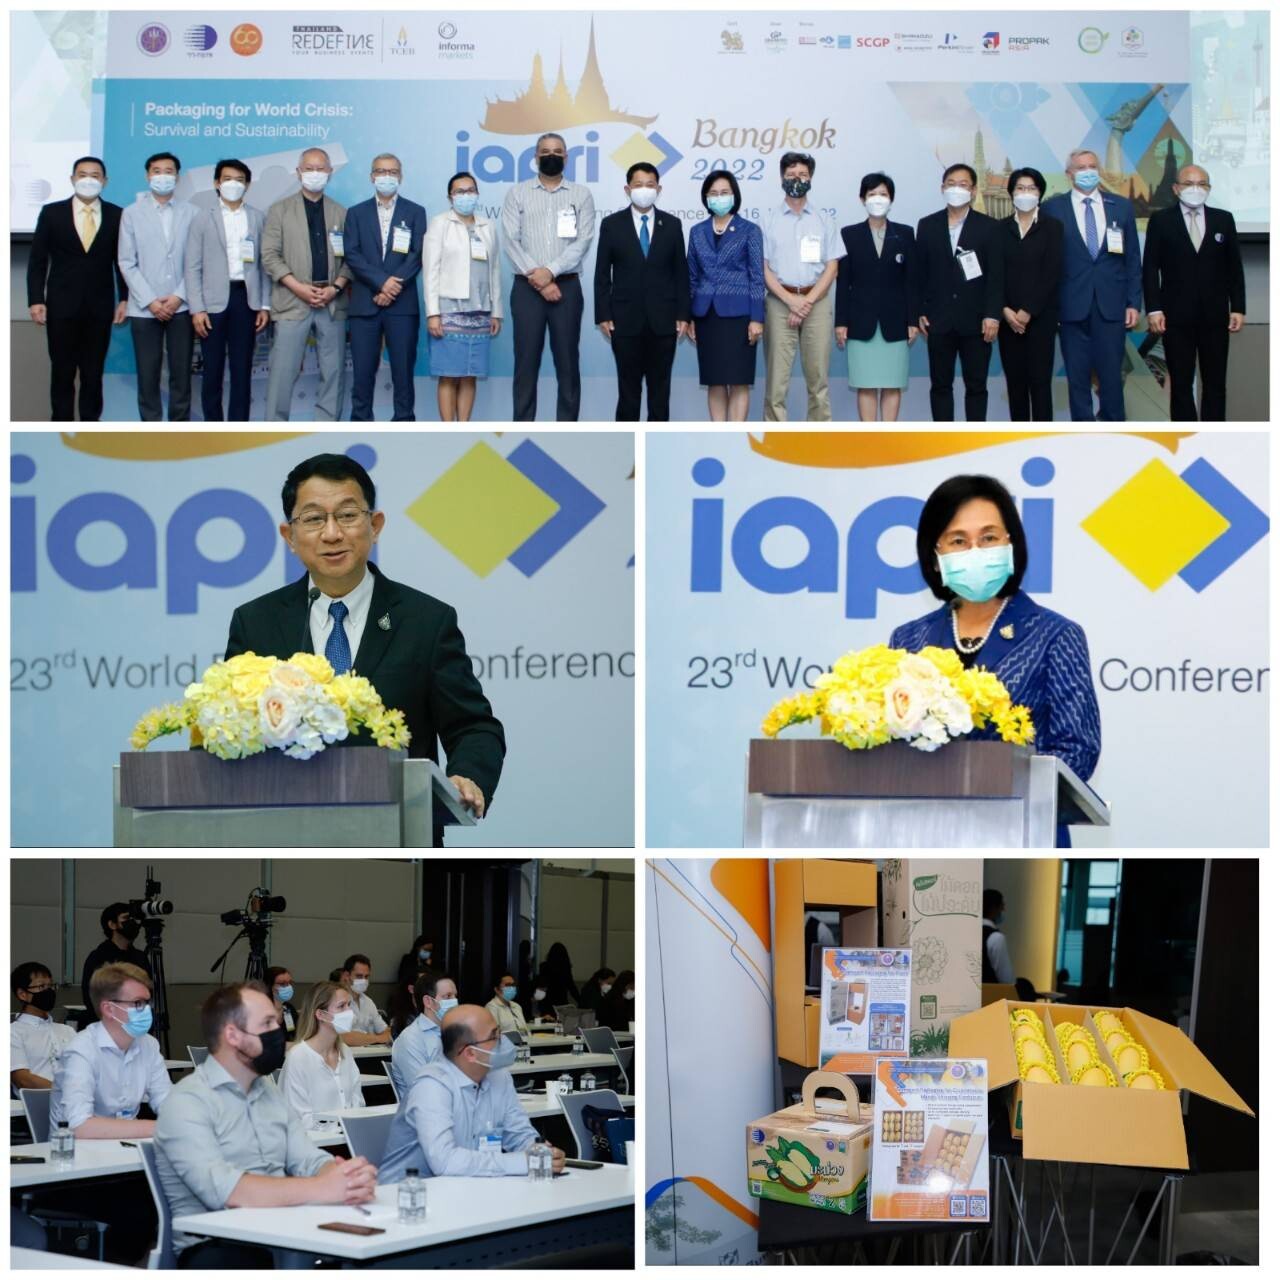 วว. มุ่งพัฒนาเทคโนโลยีด้านบรรจุภัณฑ์ของไทยสู่ระดับสากล เปิดการประชุมวิชาการนานาชาติด้านบรรจุภัณฑ์  :  23 rd  World  Packaging  Conference